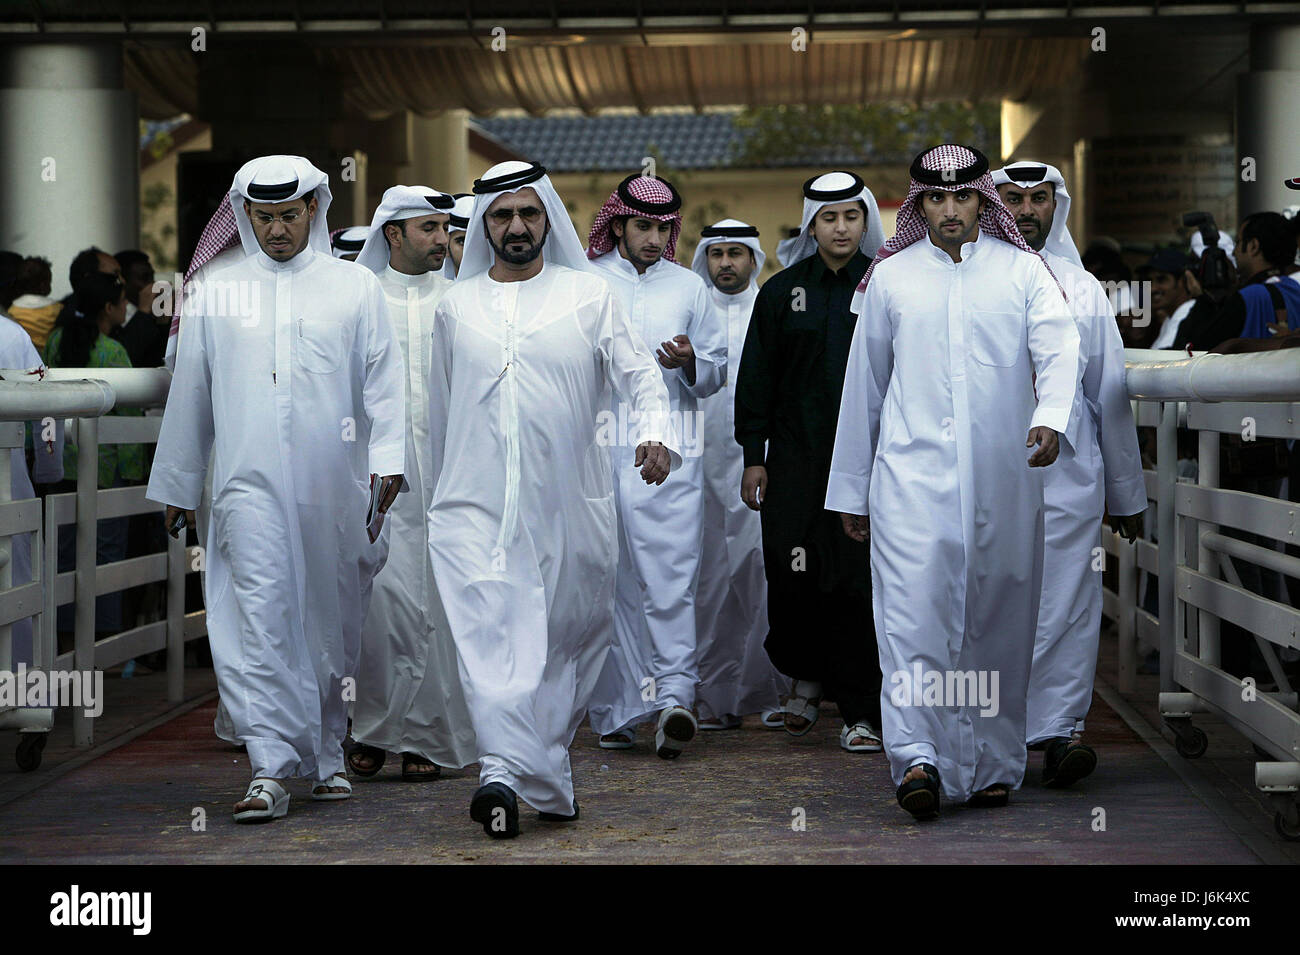 DUBAI, Emirati Arabi Uniti - 26 Marzo 2005: Sheikh Mohammed Bin Rashid Al Maktoum (anteriore) e famiglia partecipare a Dubai World Cup corsa di cavalli in Dubai. Foto di Paul Velasco Foto Stock